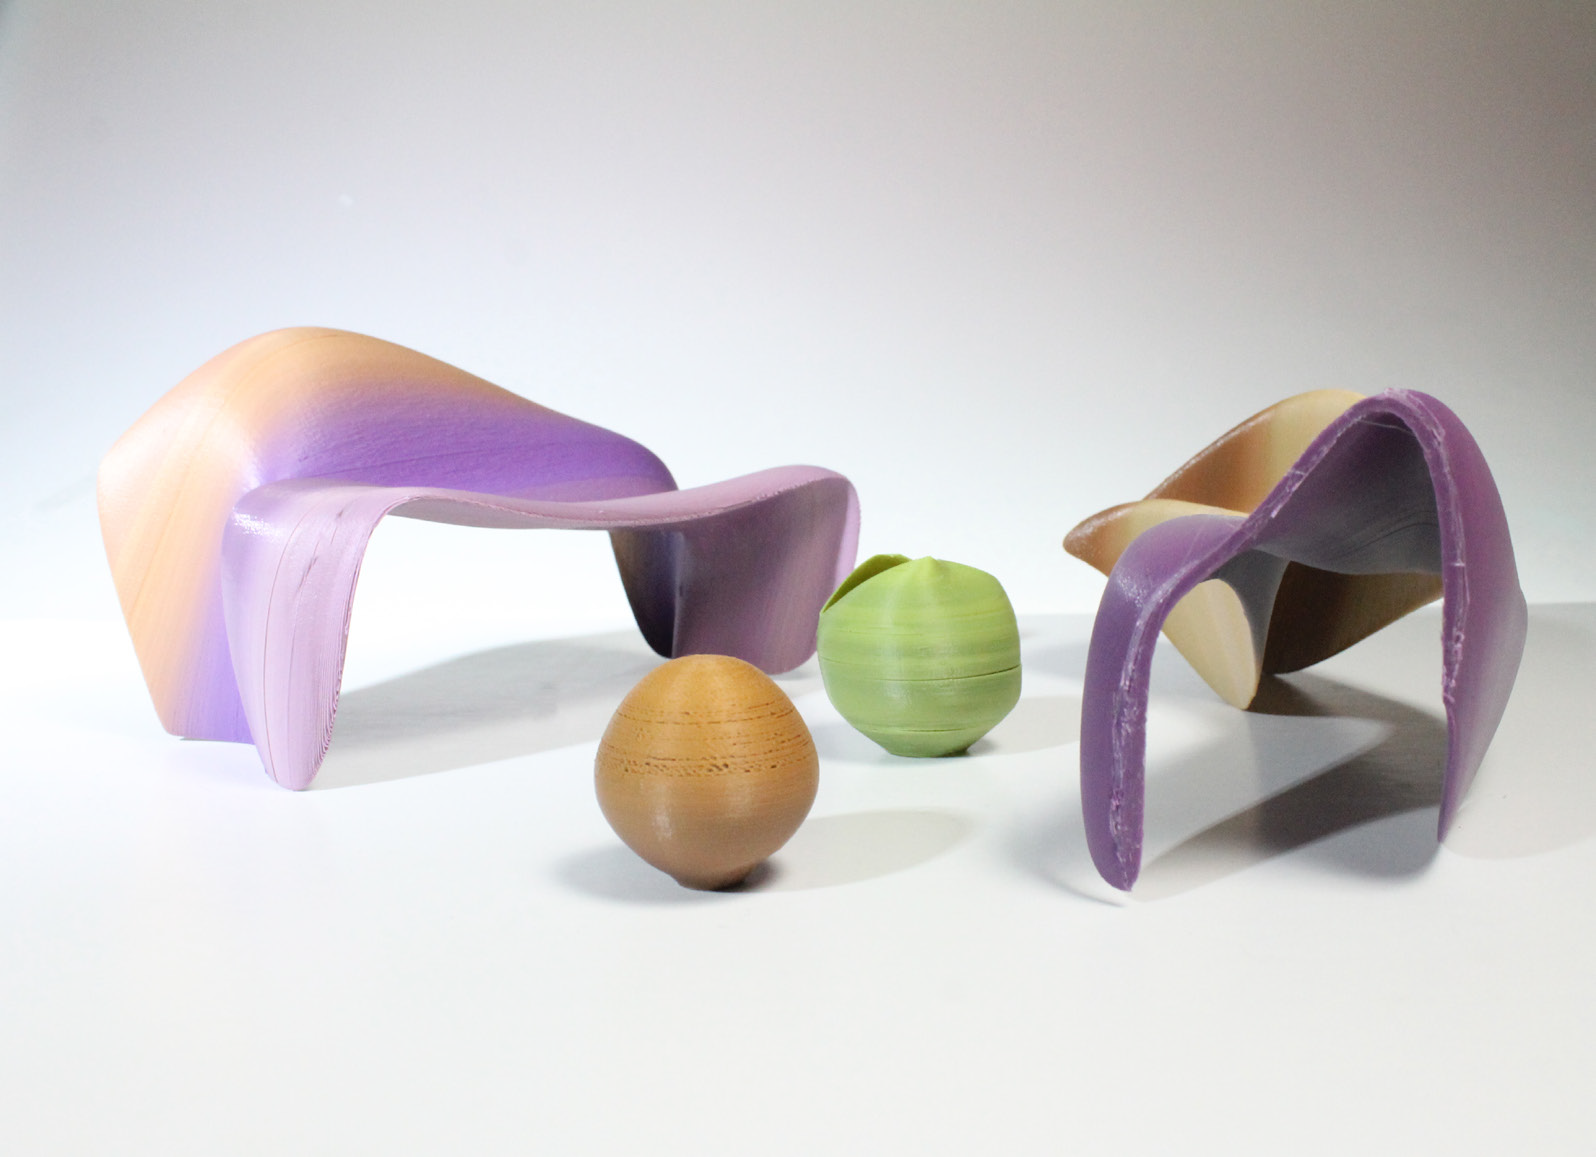 3D printed furniture